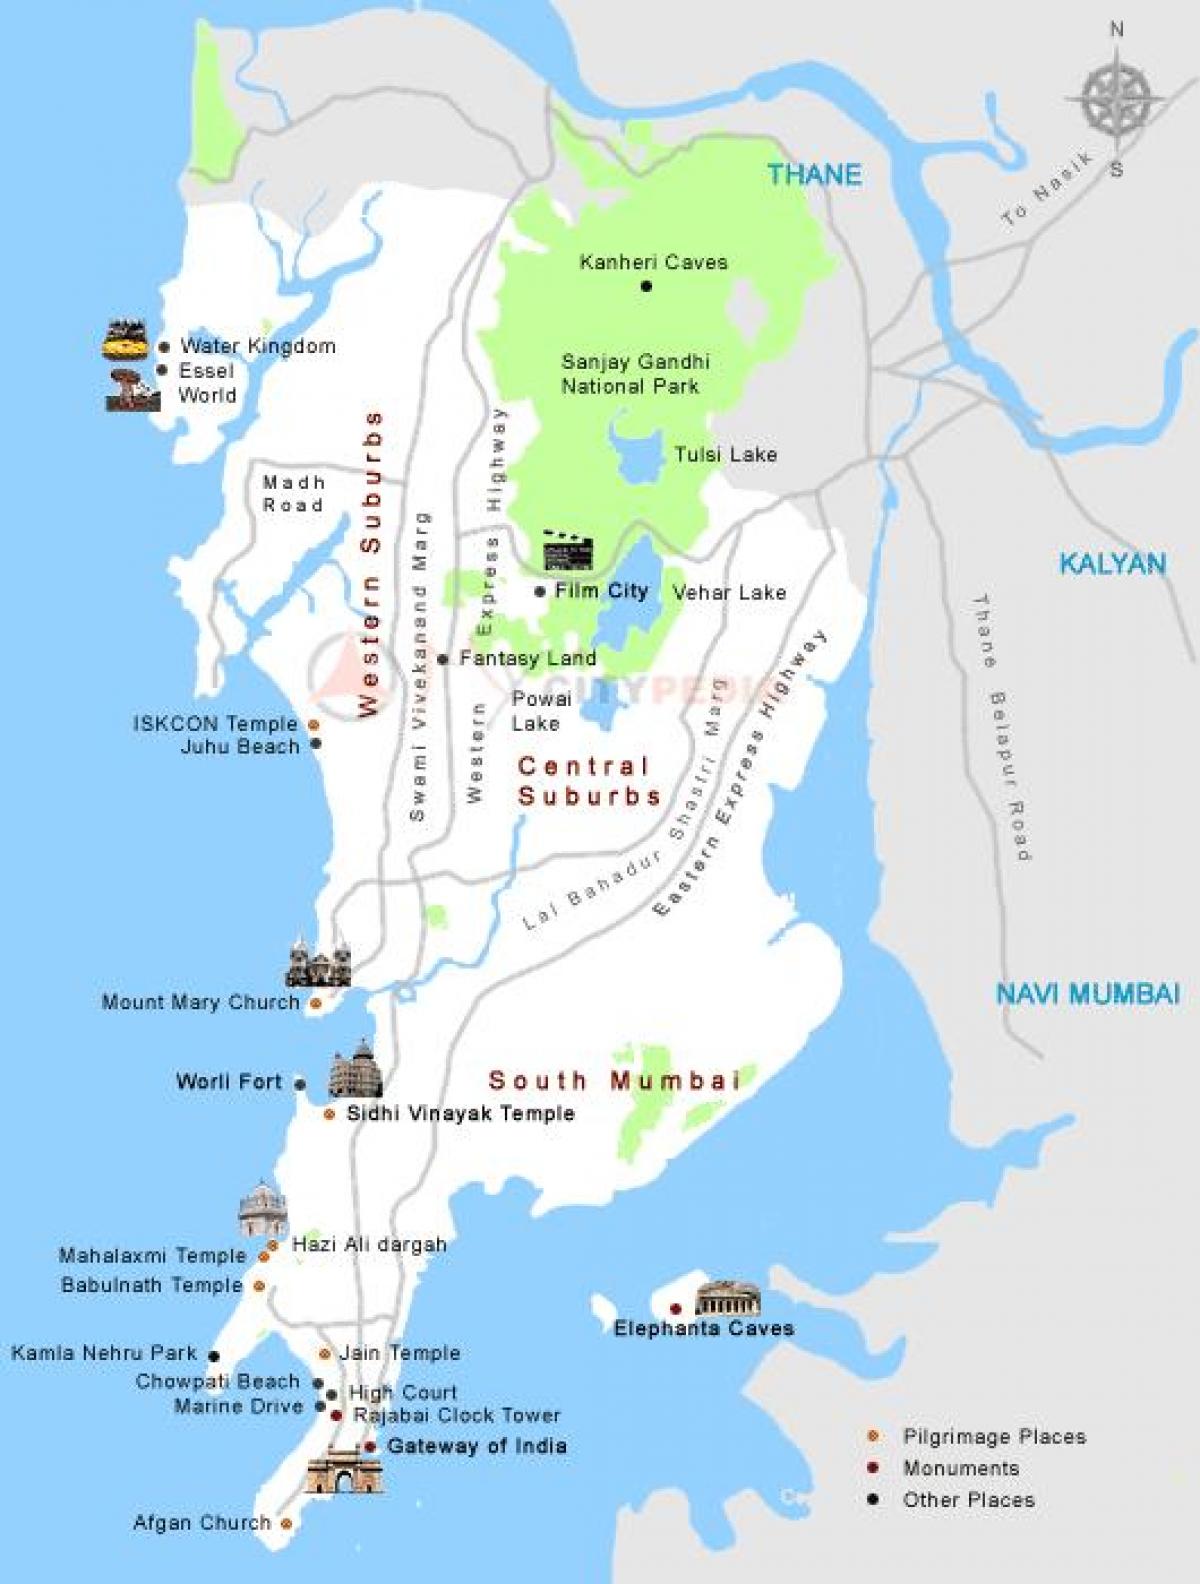 Mumbai darshan vietu karte